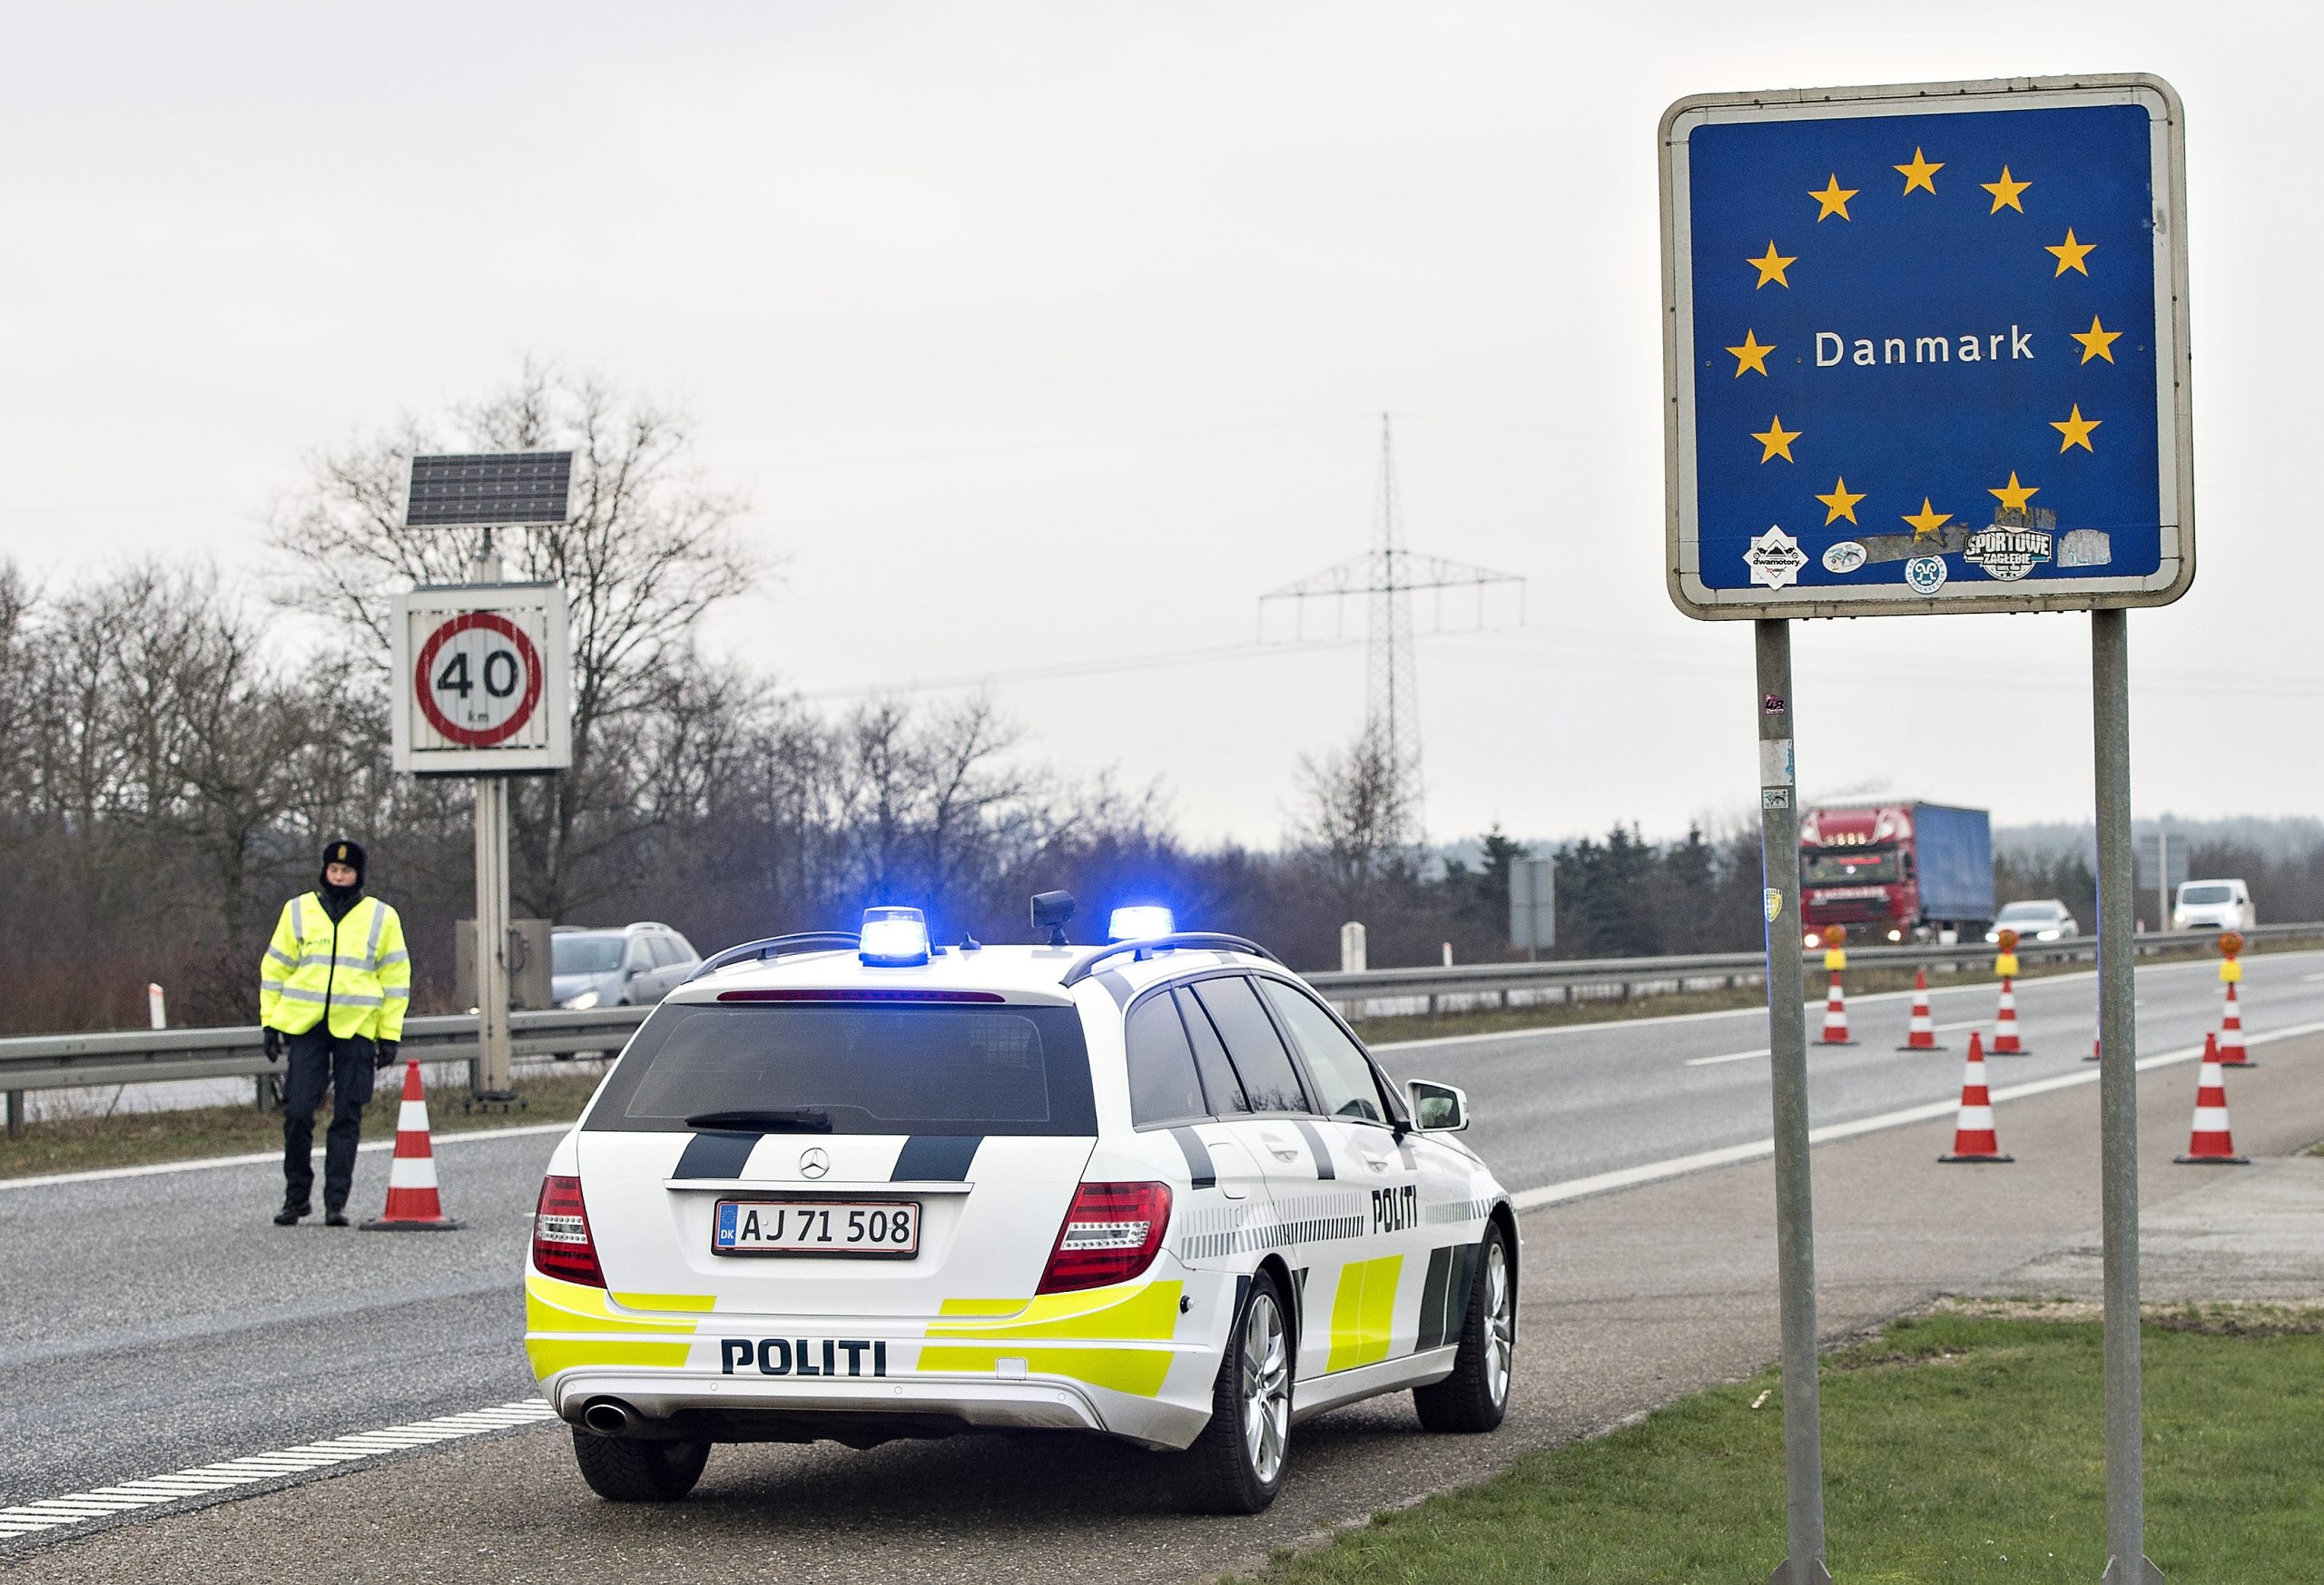 Δανία: Νέος νόμος προβλέπει επανεγκατάσταση αιτούντων άσυλο σε χώρες εκτός ΕΕ